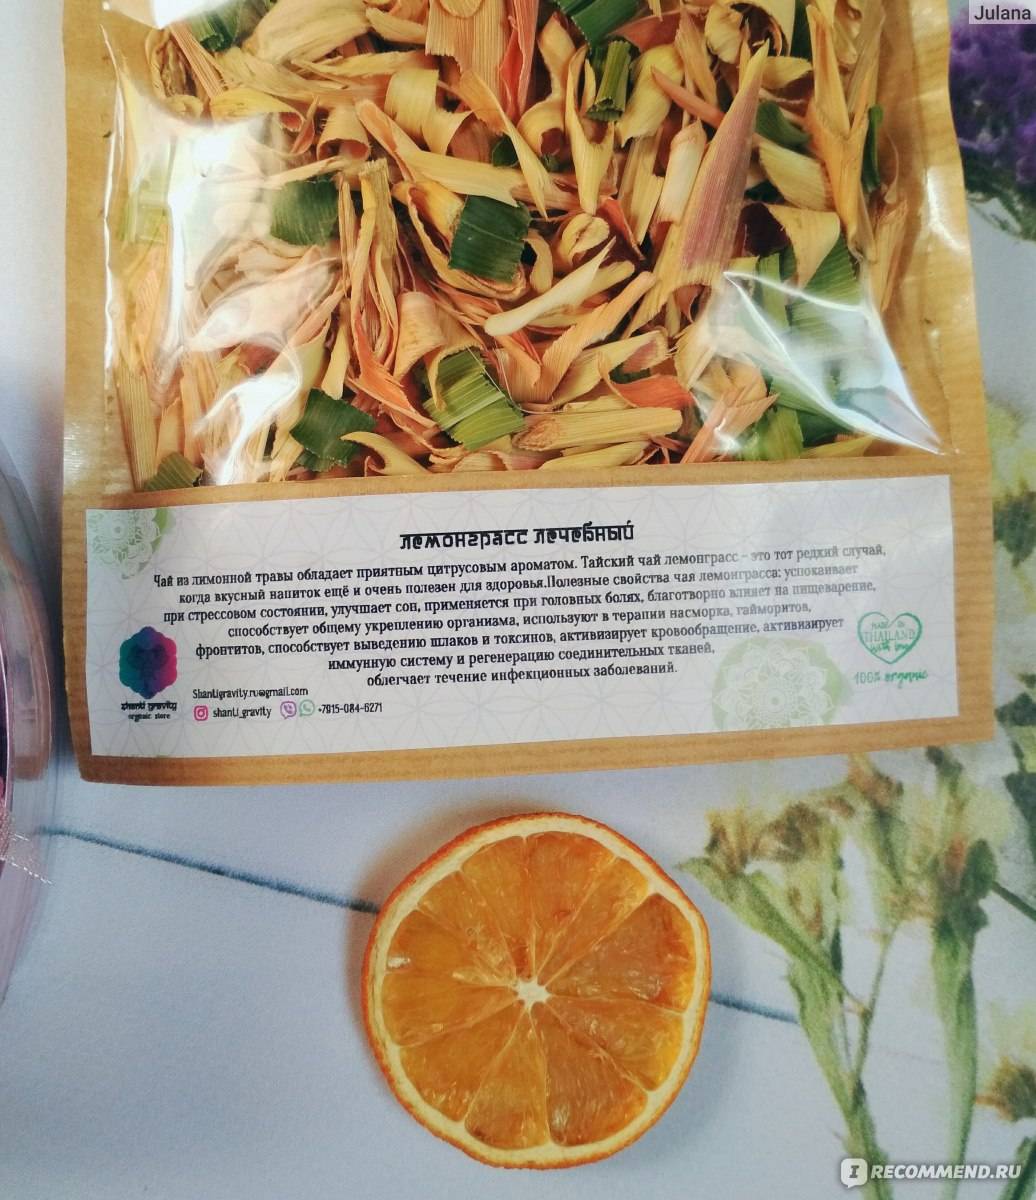 Лемонграсс (лимонное сорго): полезные свойства чая, травы, применение цимбопогона, вред, противопоказания